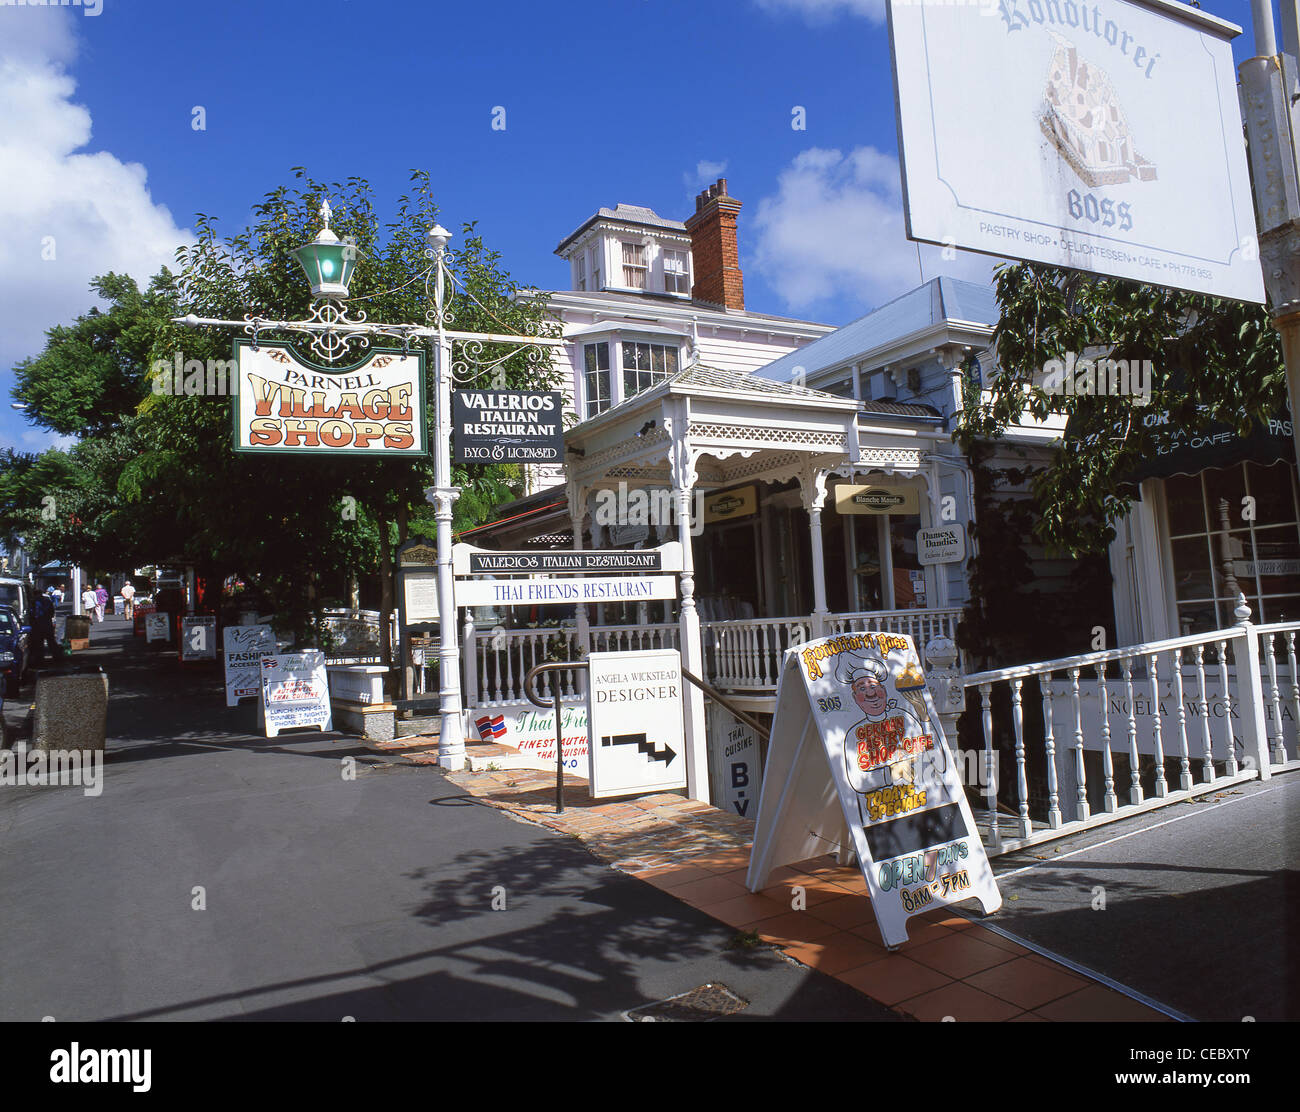 Parnell Village Geschäfte, Parnell steigen, Parnell, Auckland, Auckland Region, Nordinsel, Neuseeland Stockfoto